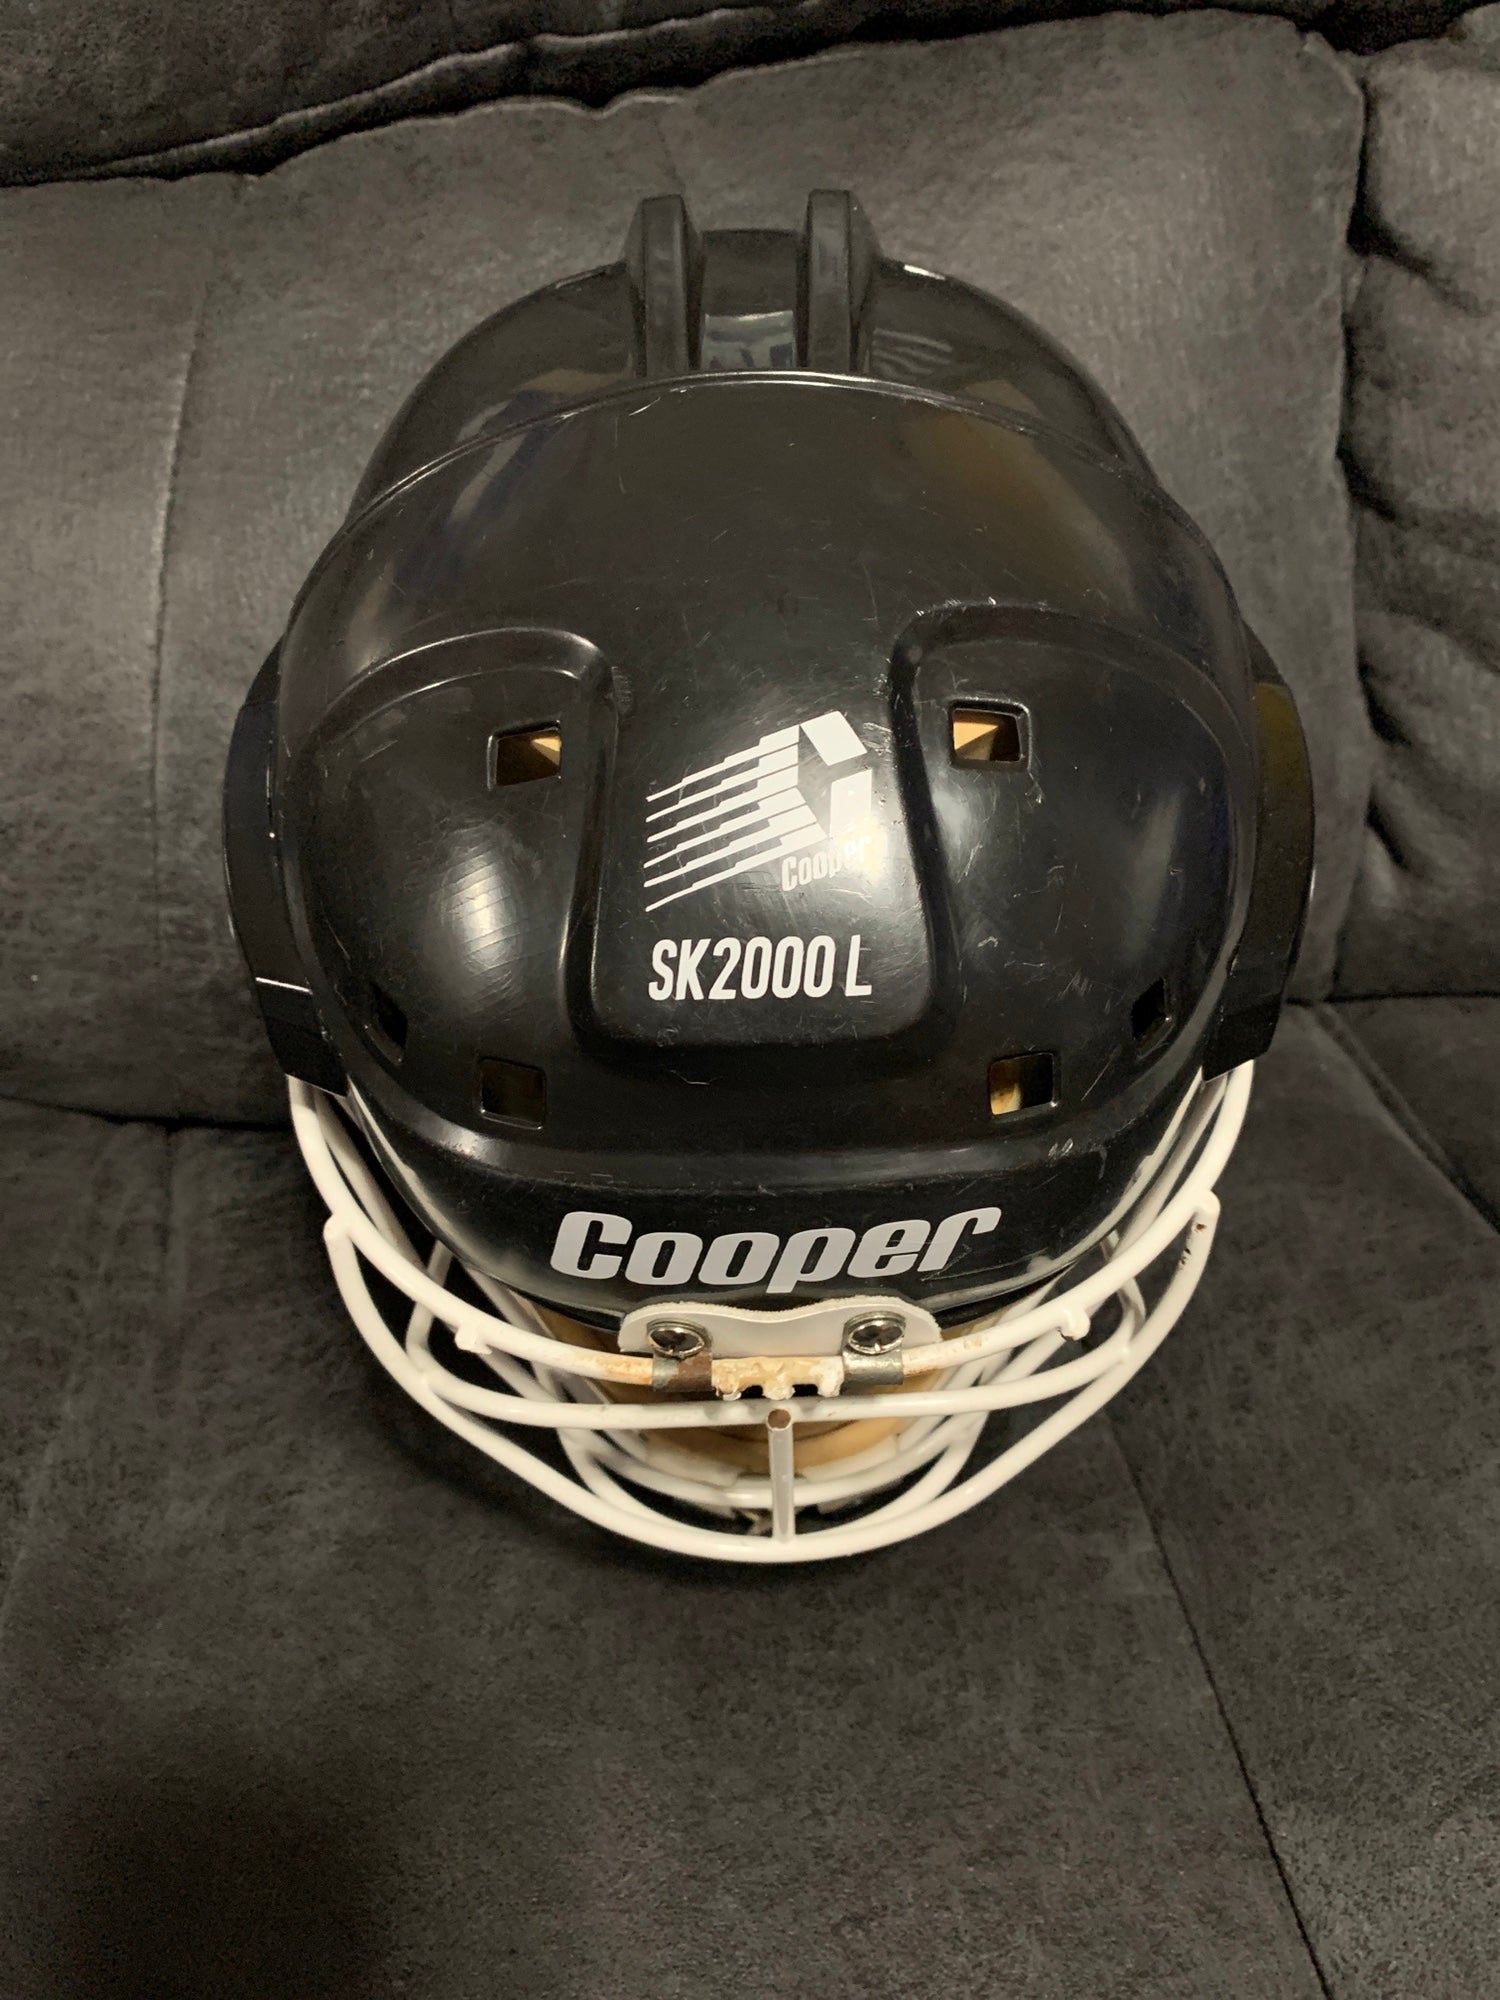 Details about   Cooper SK2000 M w/ Shield Mask Cage Black Hockey Helmet Vintage 